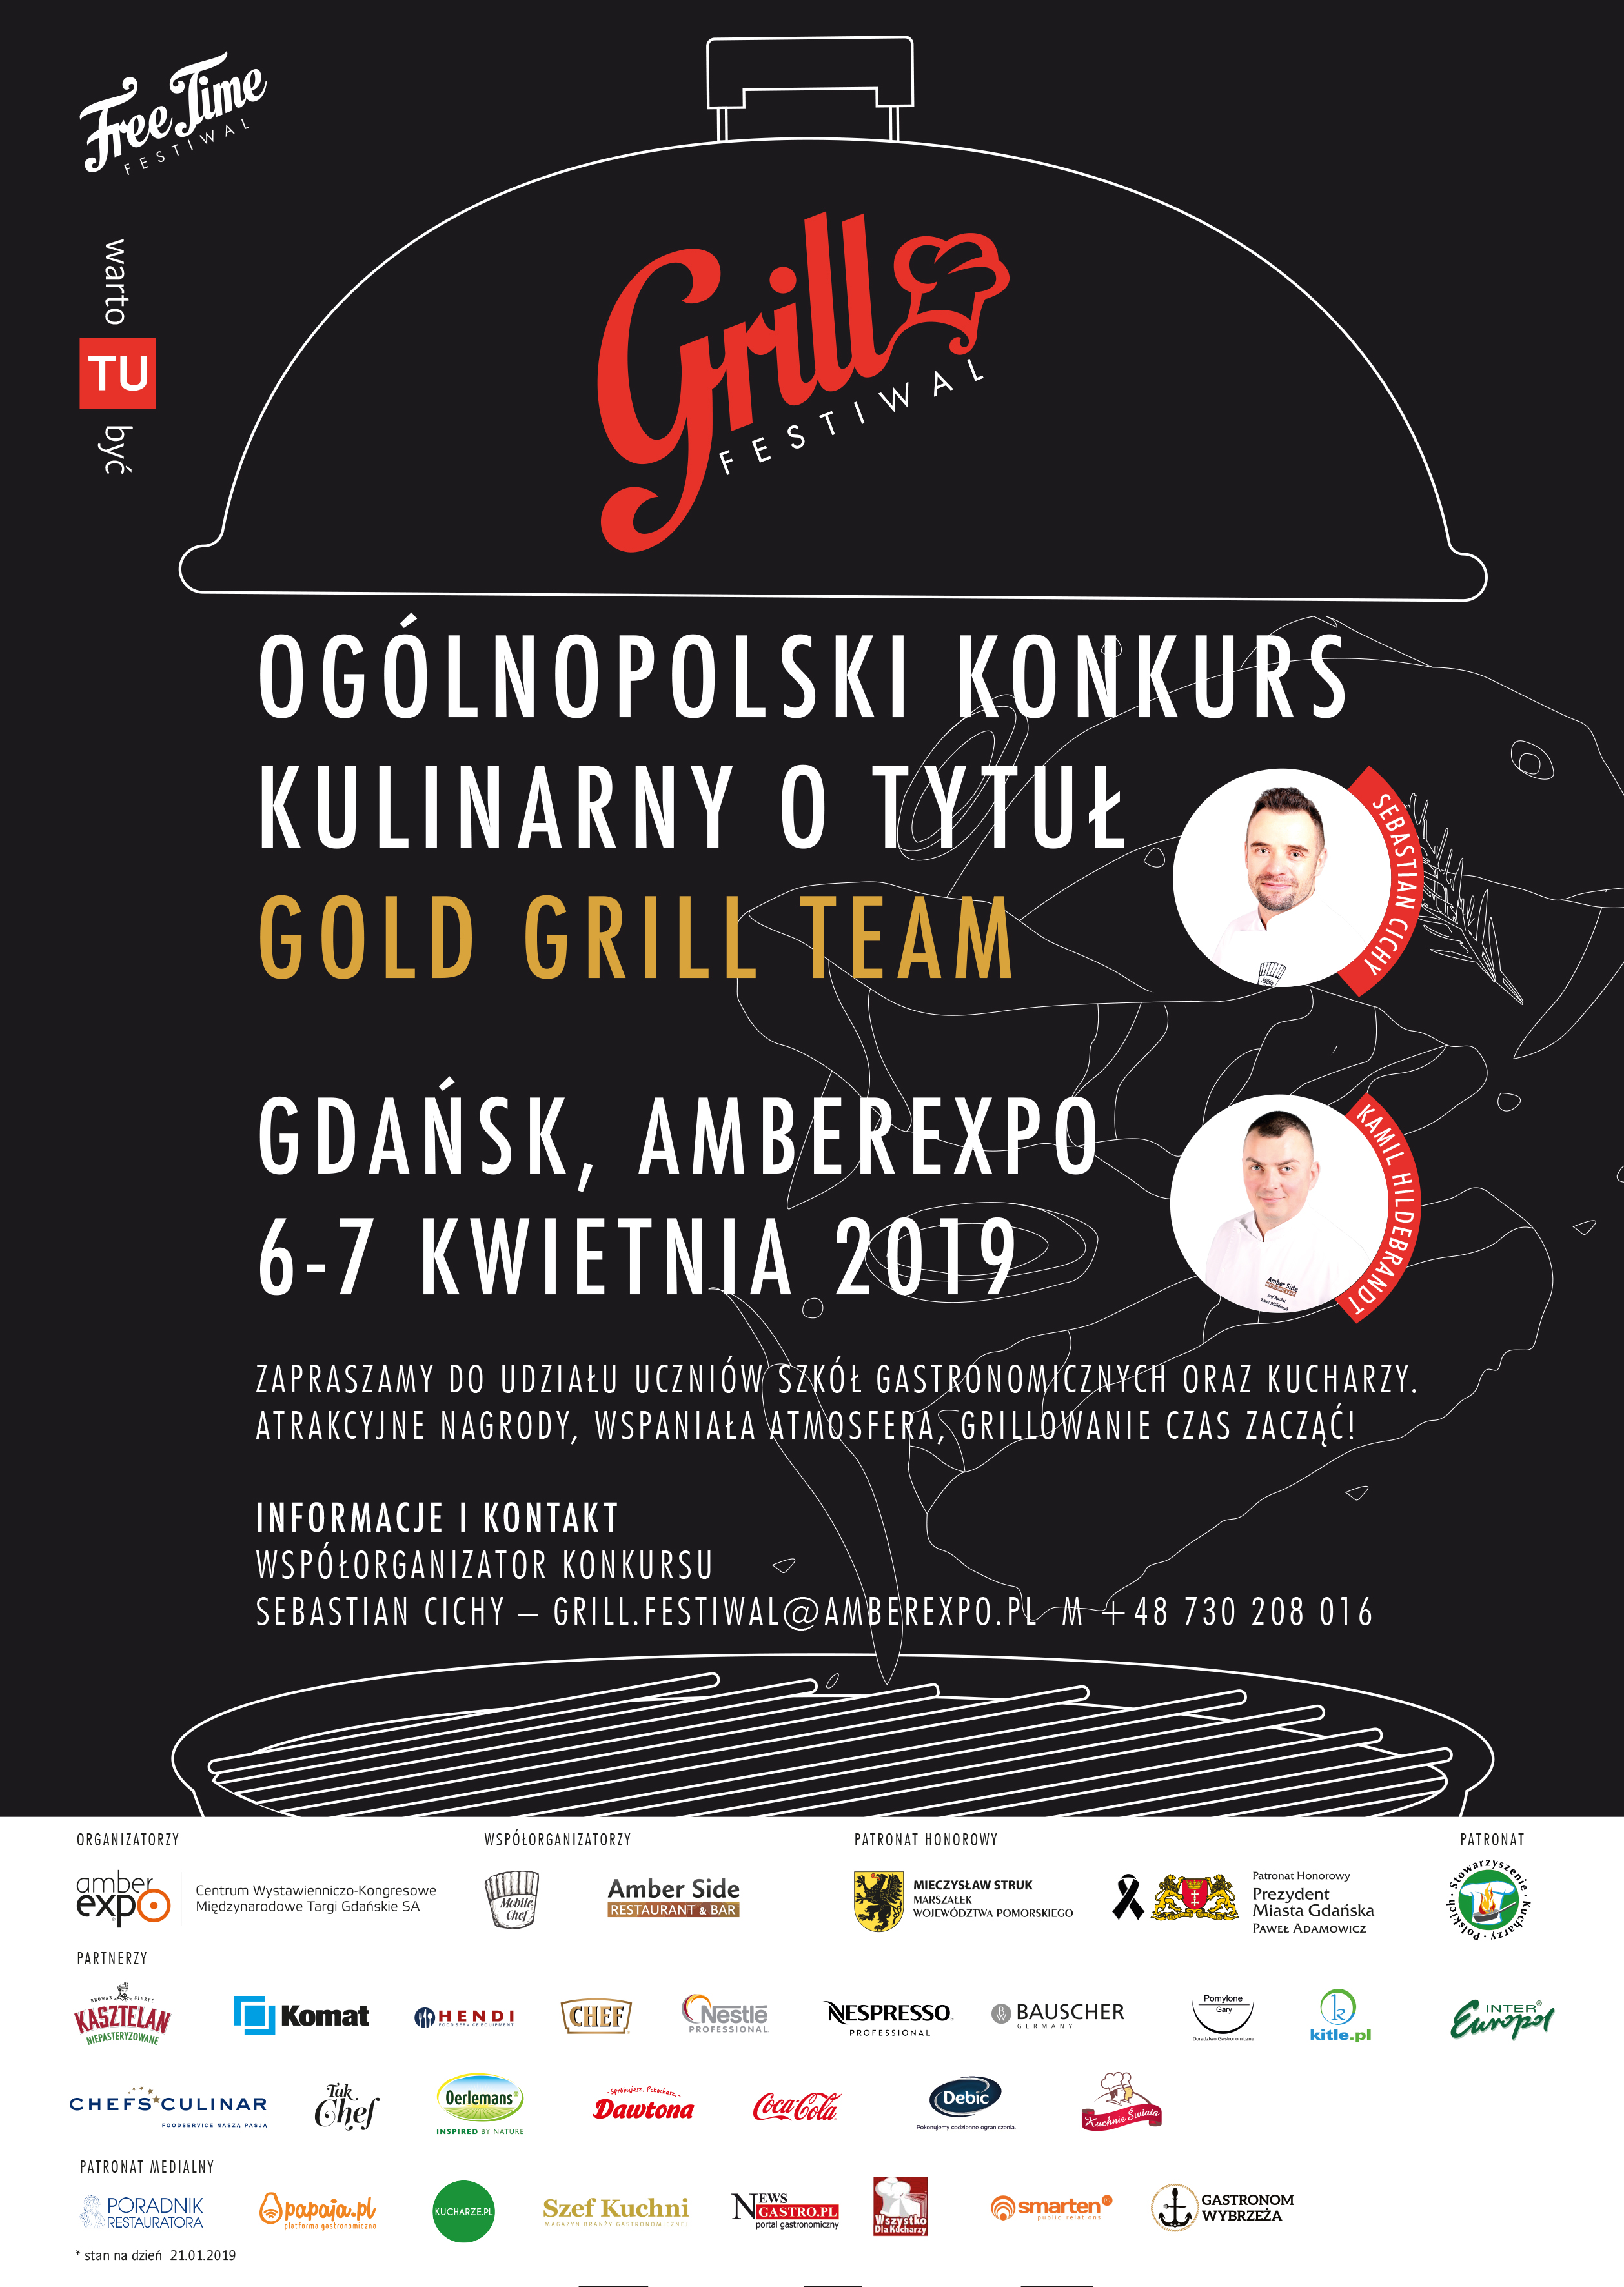 Grill Festiwal czyli Ogólnopolski Konkurs Kulinarny o tytuł Gold Grill Team